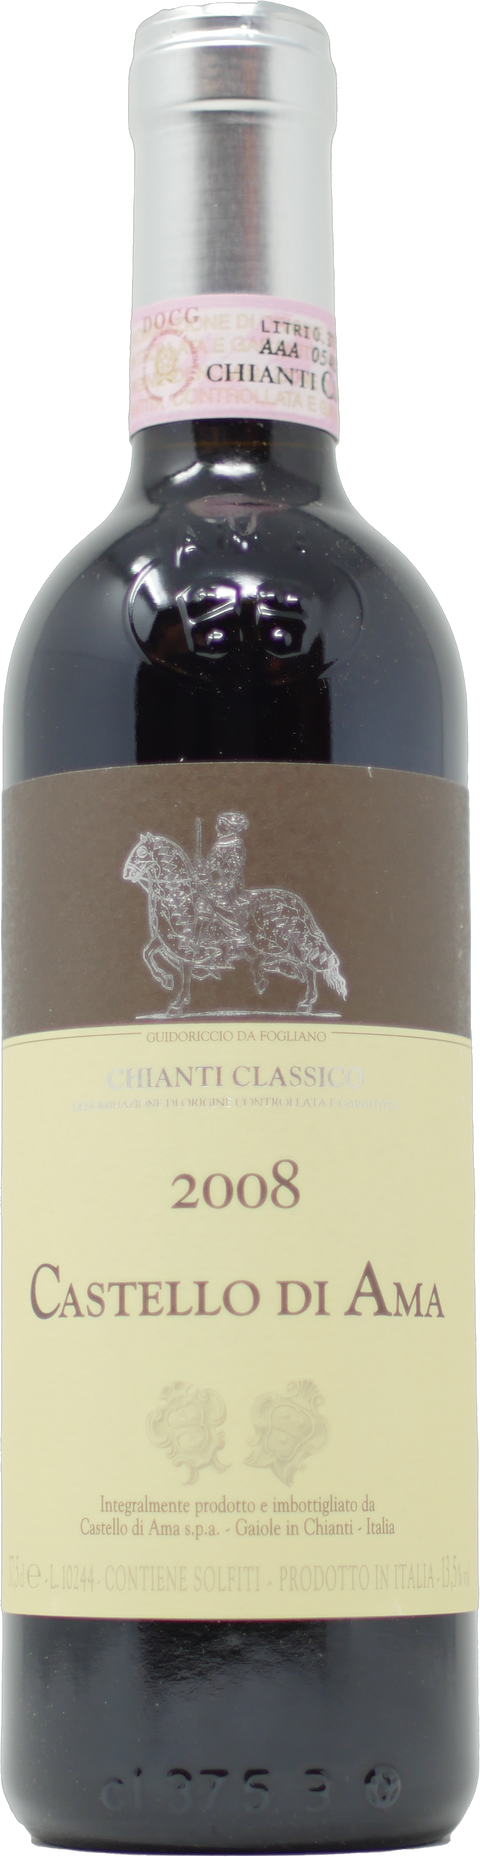 2008 Castello di Ama Chianti Classico Riserva (Half Bottle)